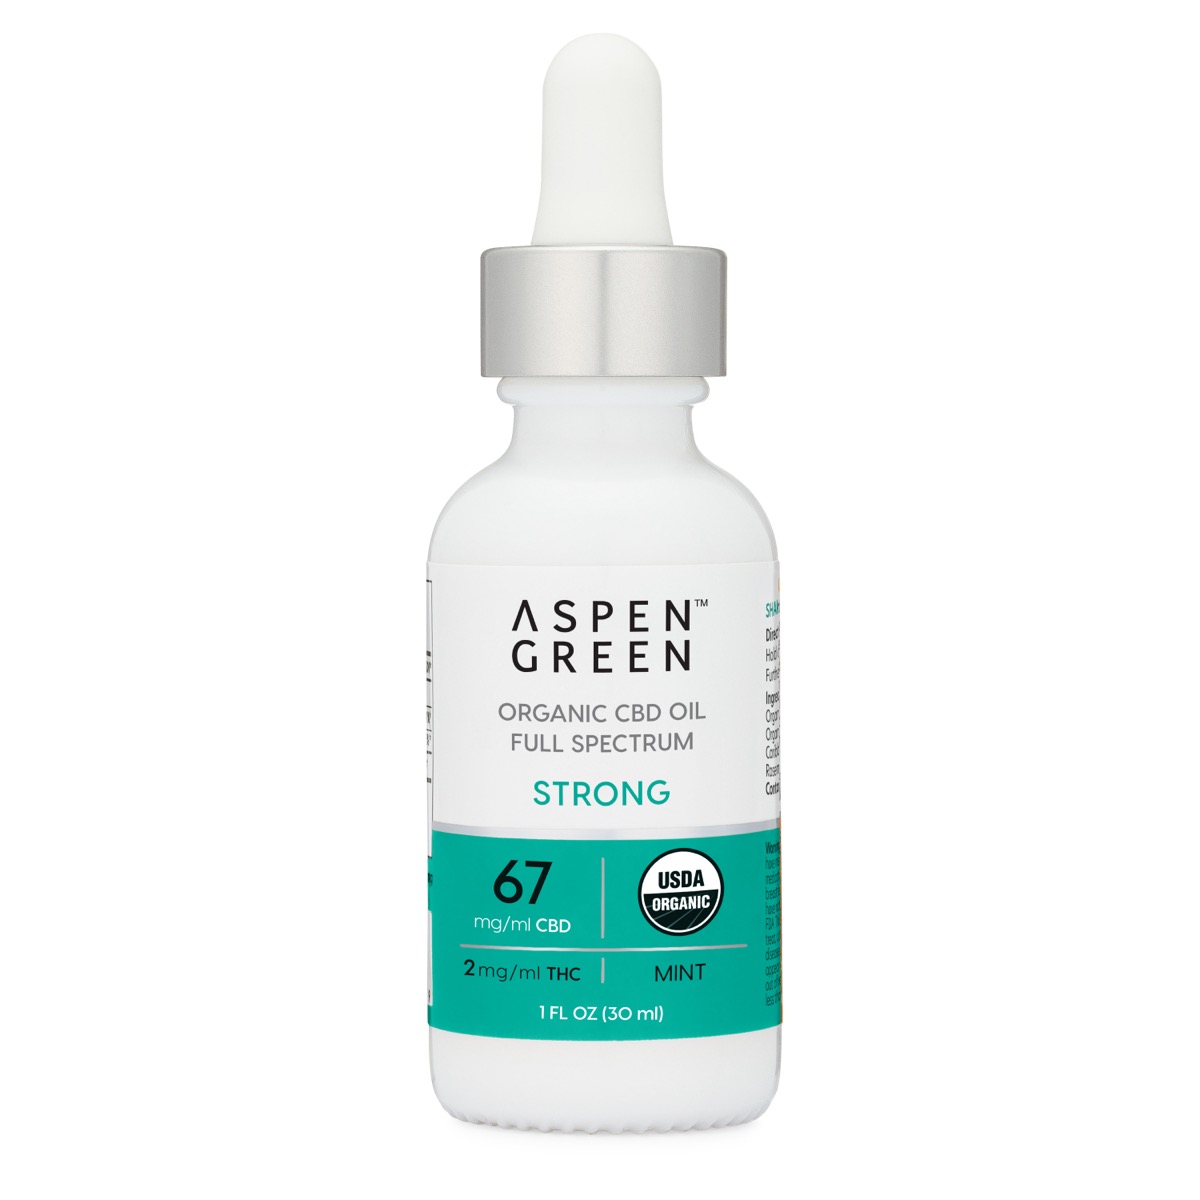 Aspen Green Strong CBD Oil Tincture - USDA Certified Organic, 67mg/ml CBD, Mint Flavor